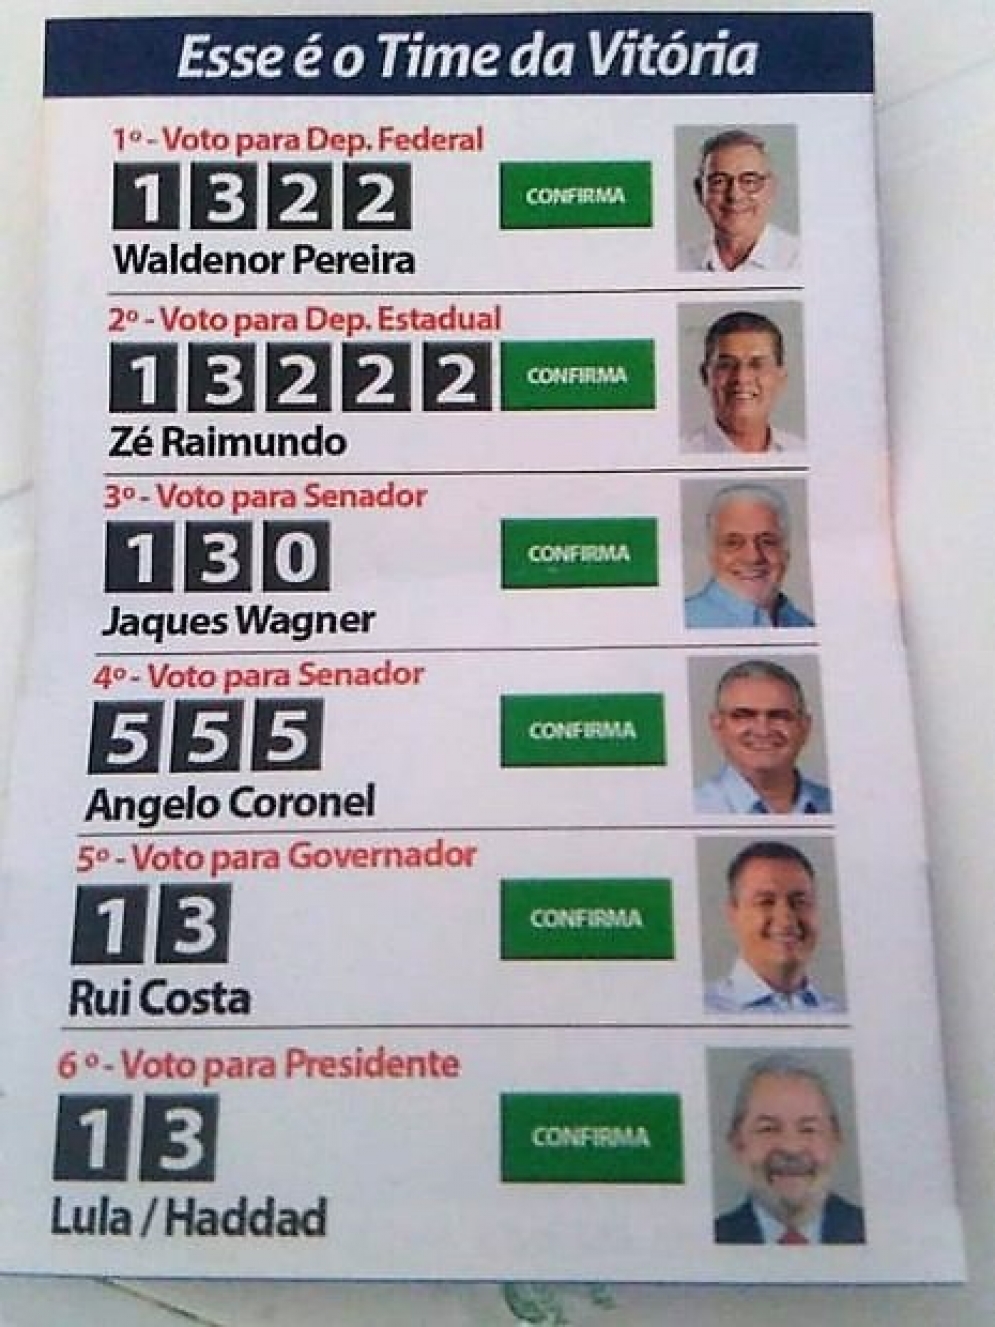 Santinho de campanha do PT na Bahia ainda tem foto de Lula candidato